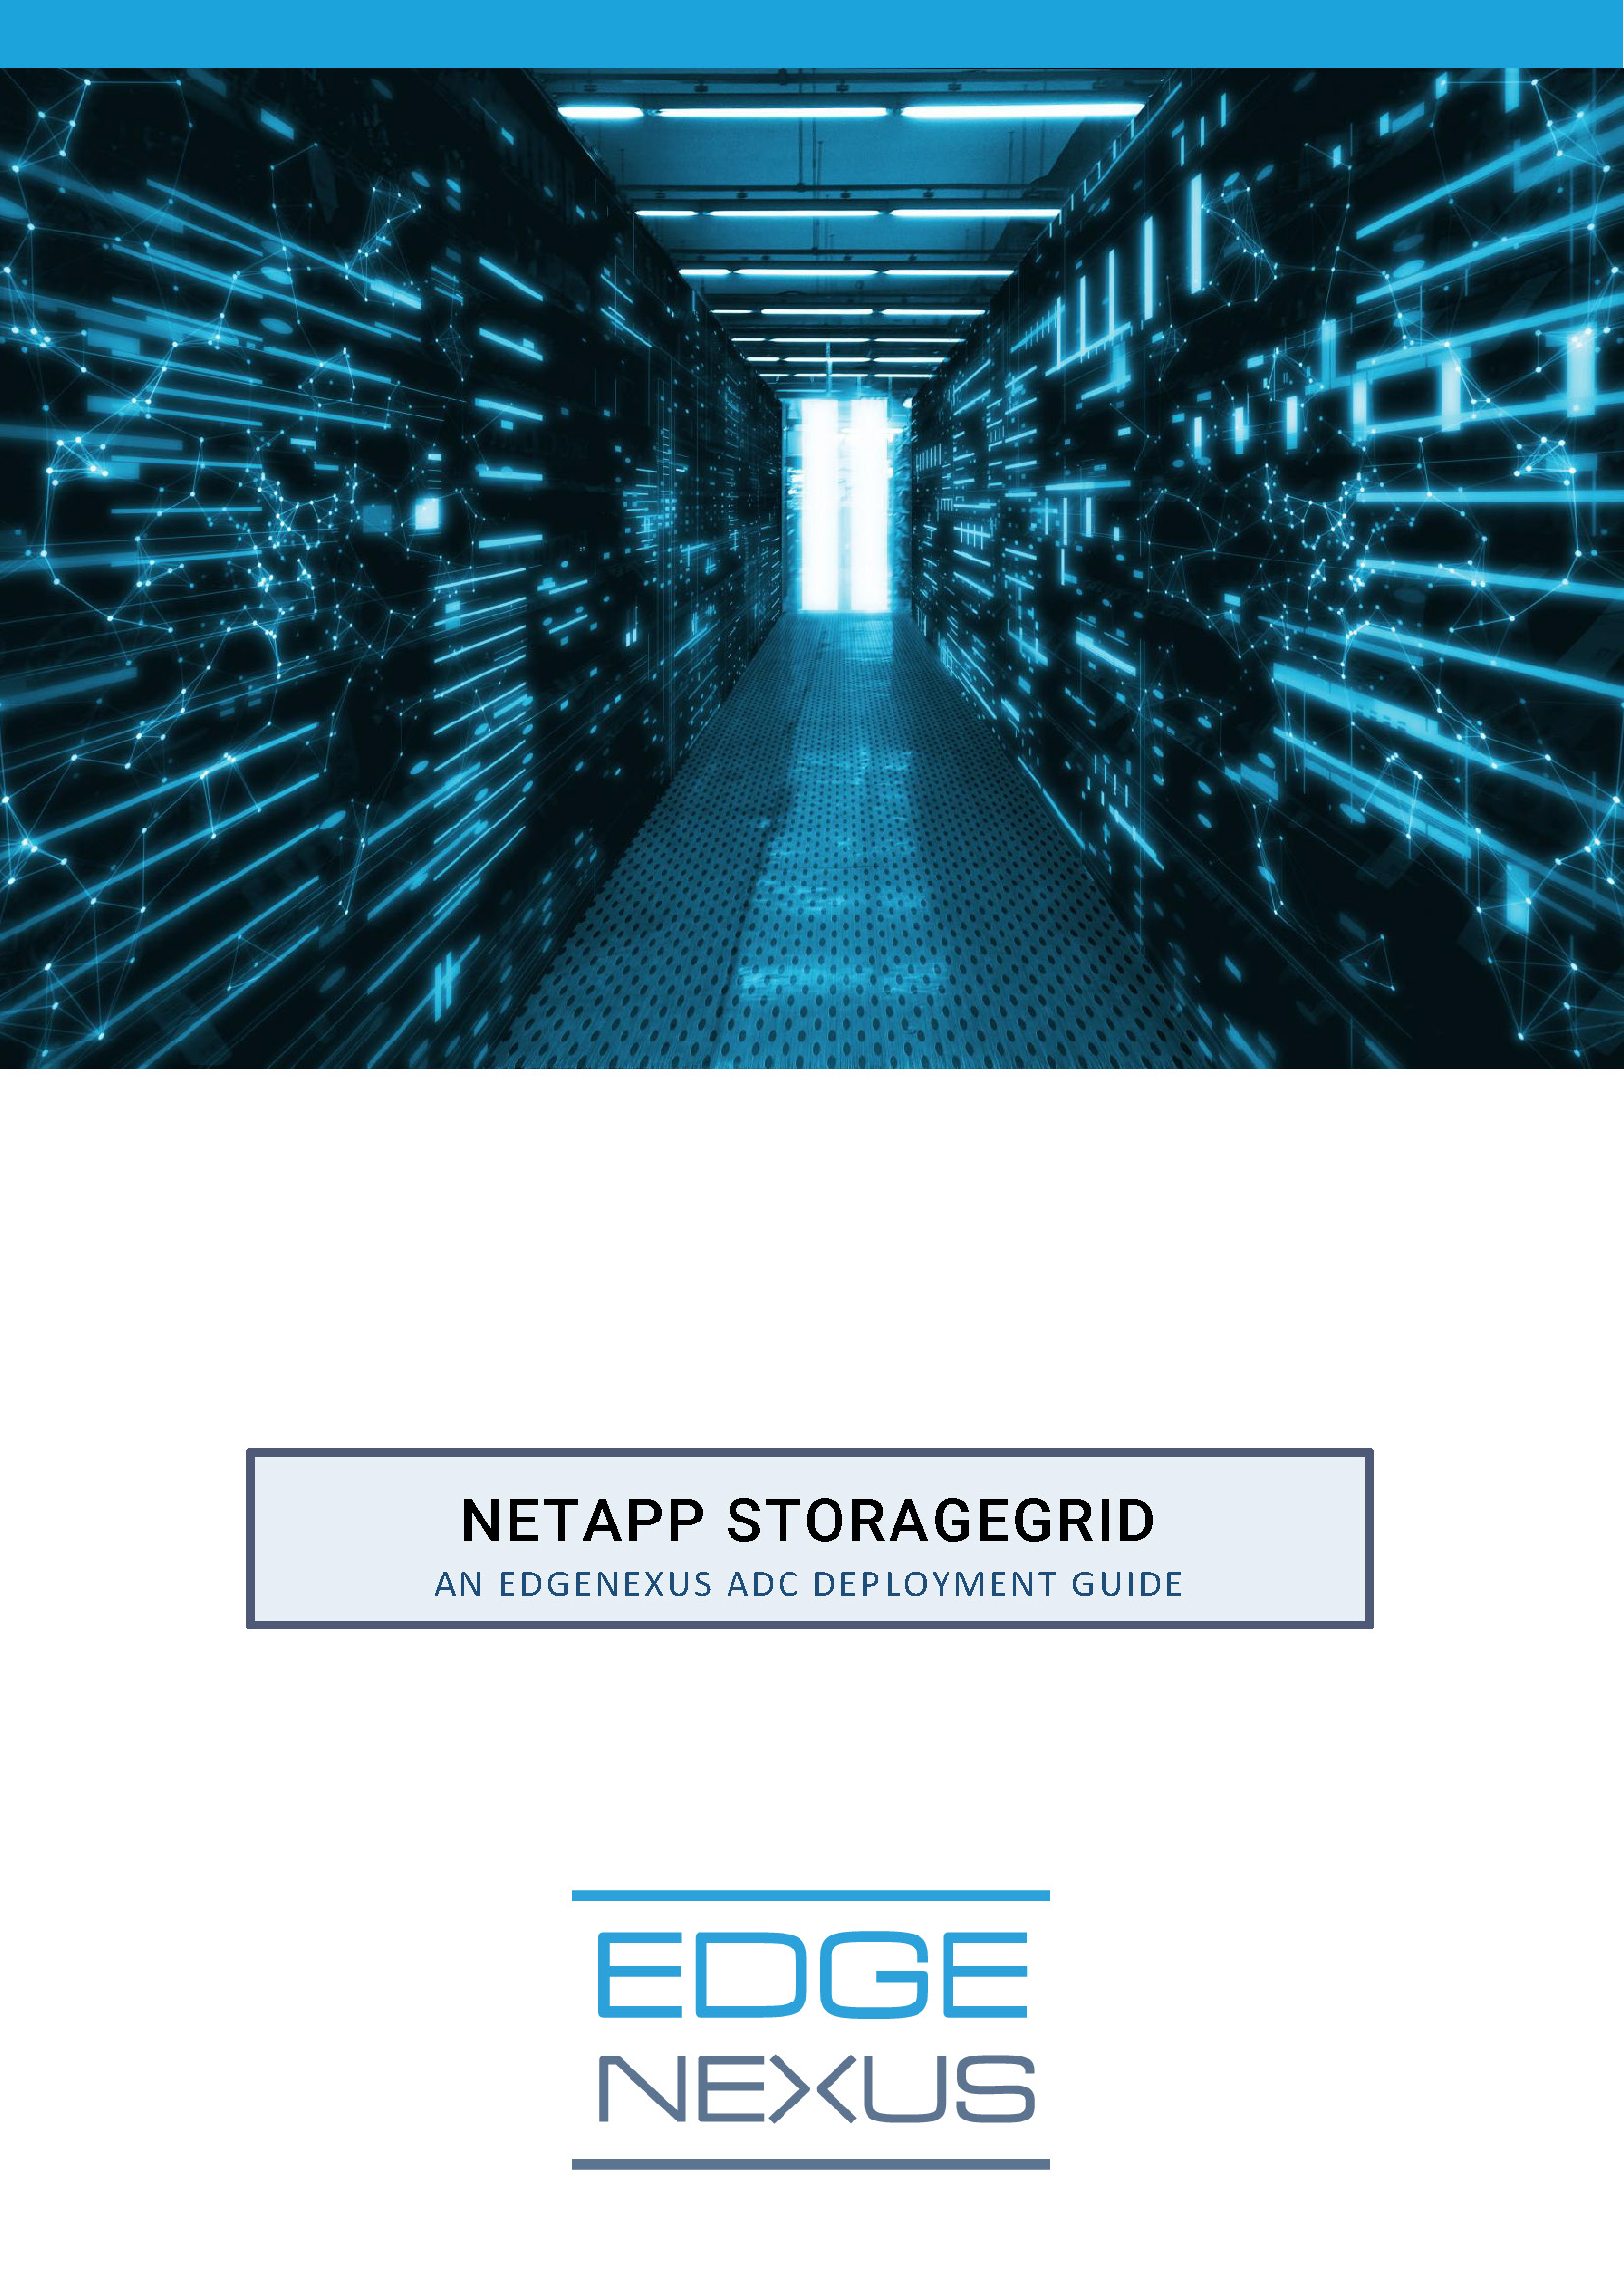 NetApp StorageGRID ADG